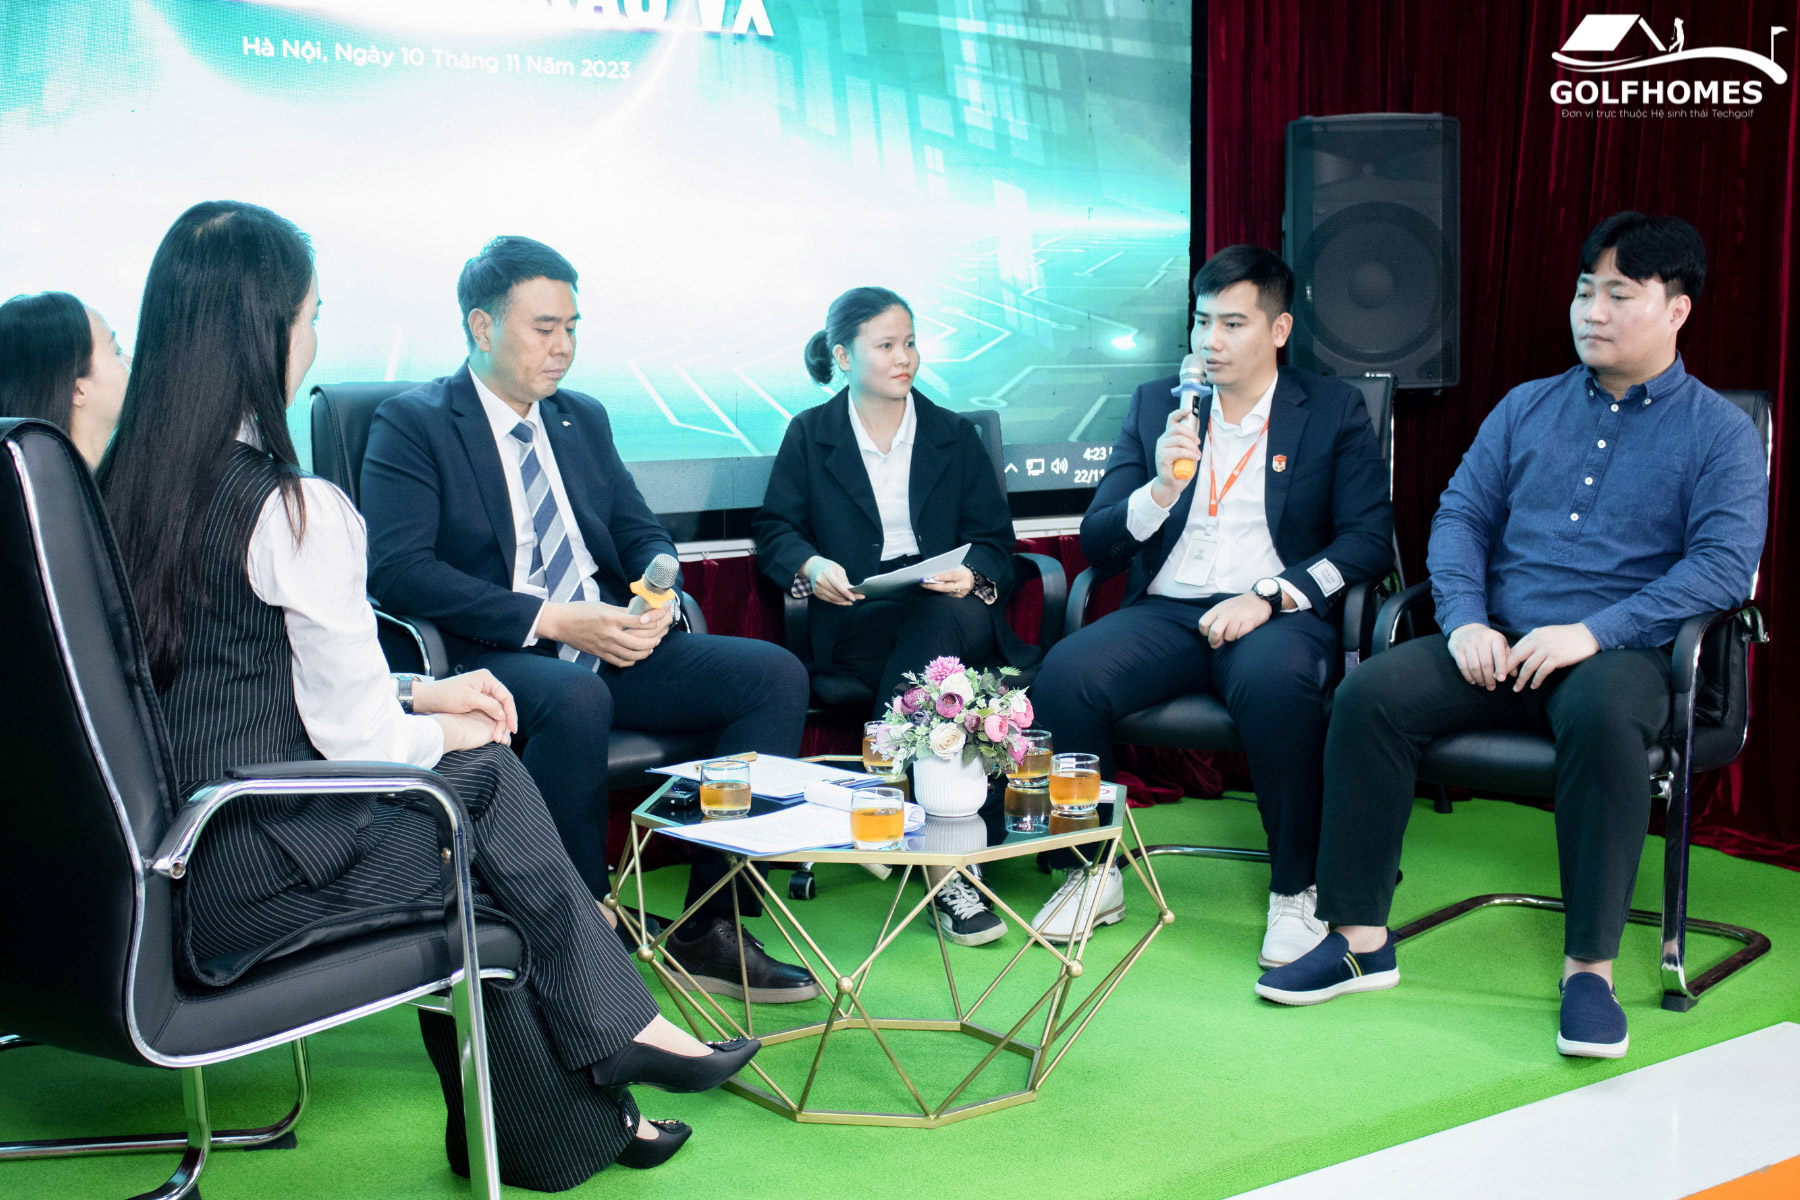 Giám đốc GolfHomes, Mr. Nguyễn Tuấn Anh chia sẻ về tầm nhìn phát triển phần mềm Kakao VX tại Việt Nam